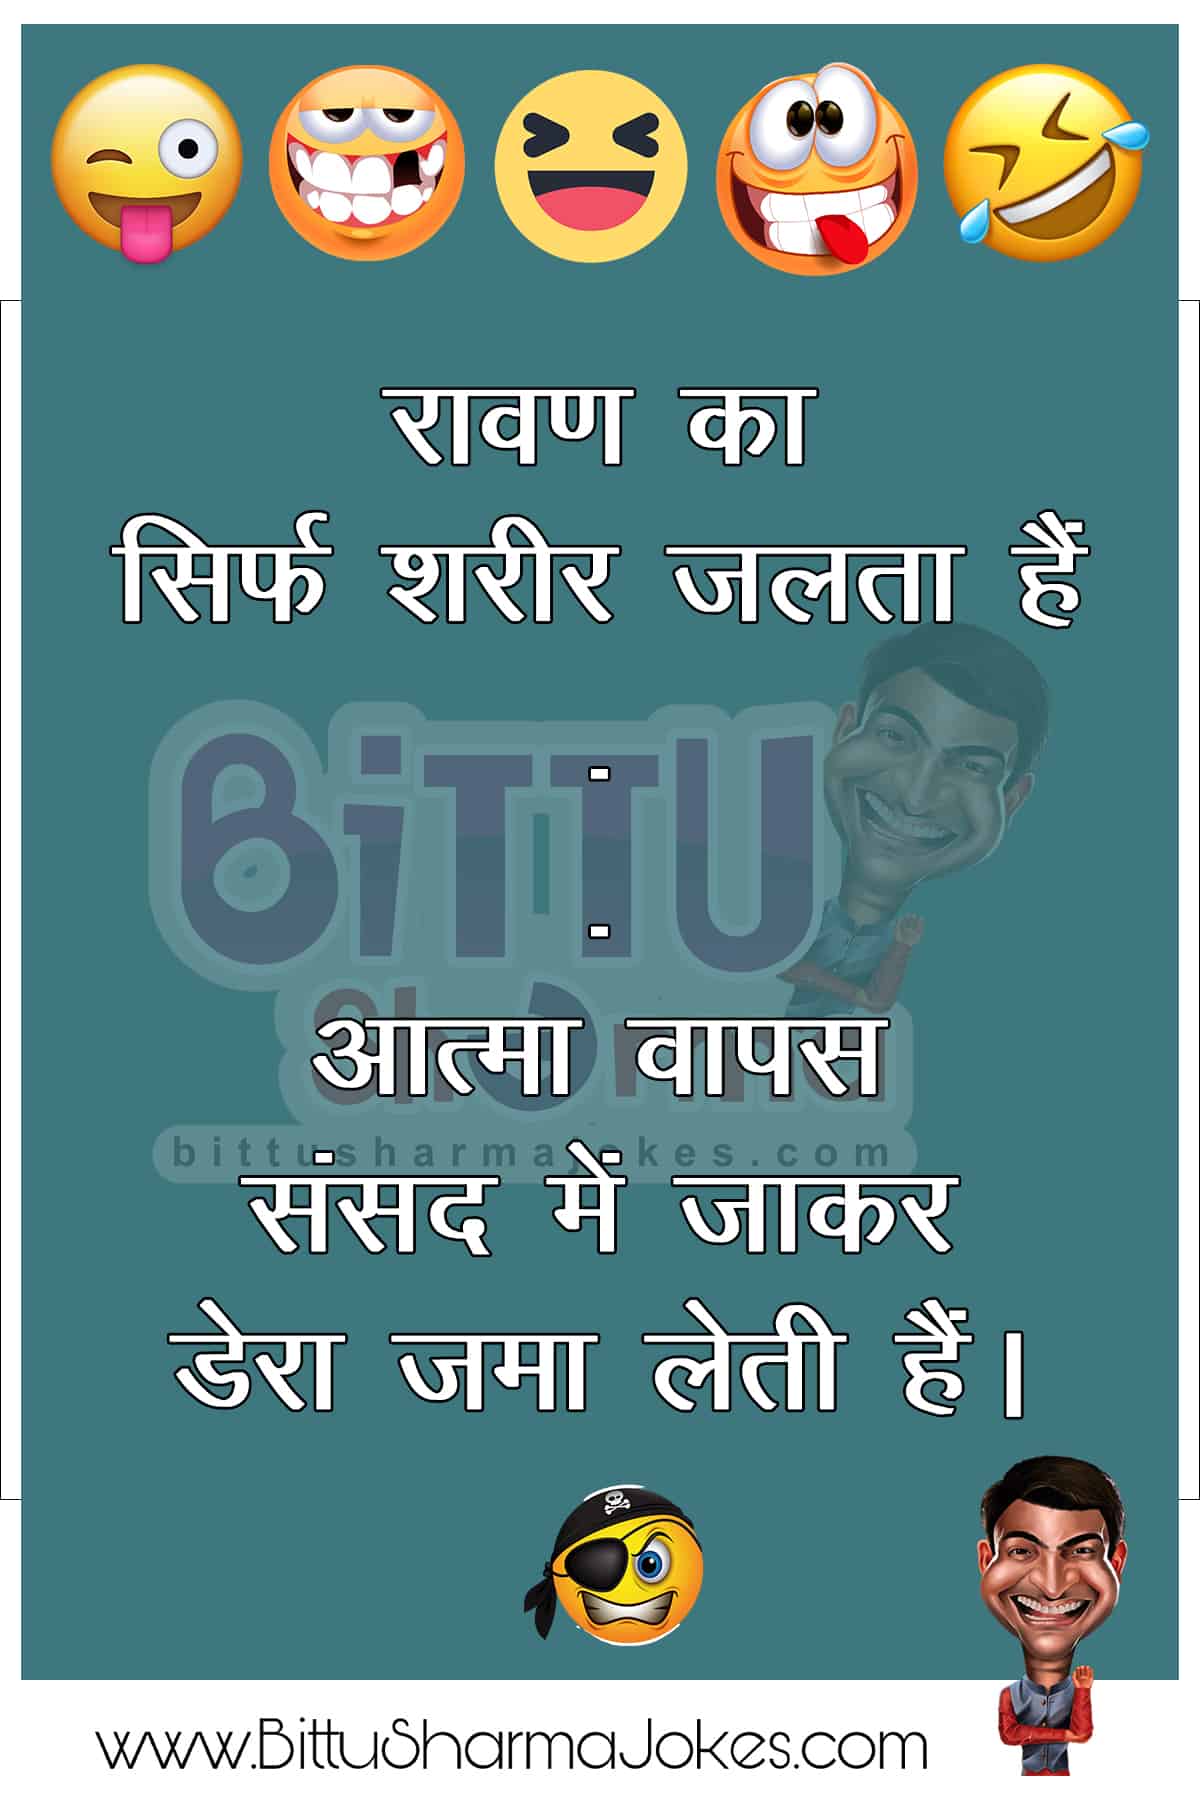 Bittu Sharma Jokes in Hindi | बिट्टू शर्मा जोक्स | Funny Jokes in Hindi